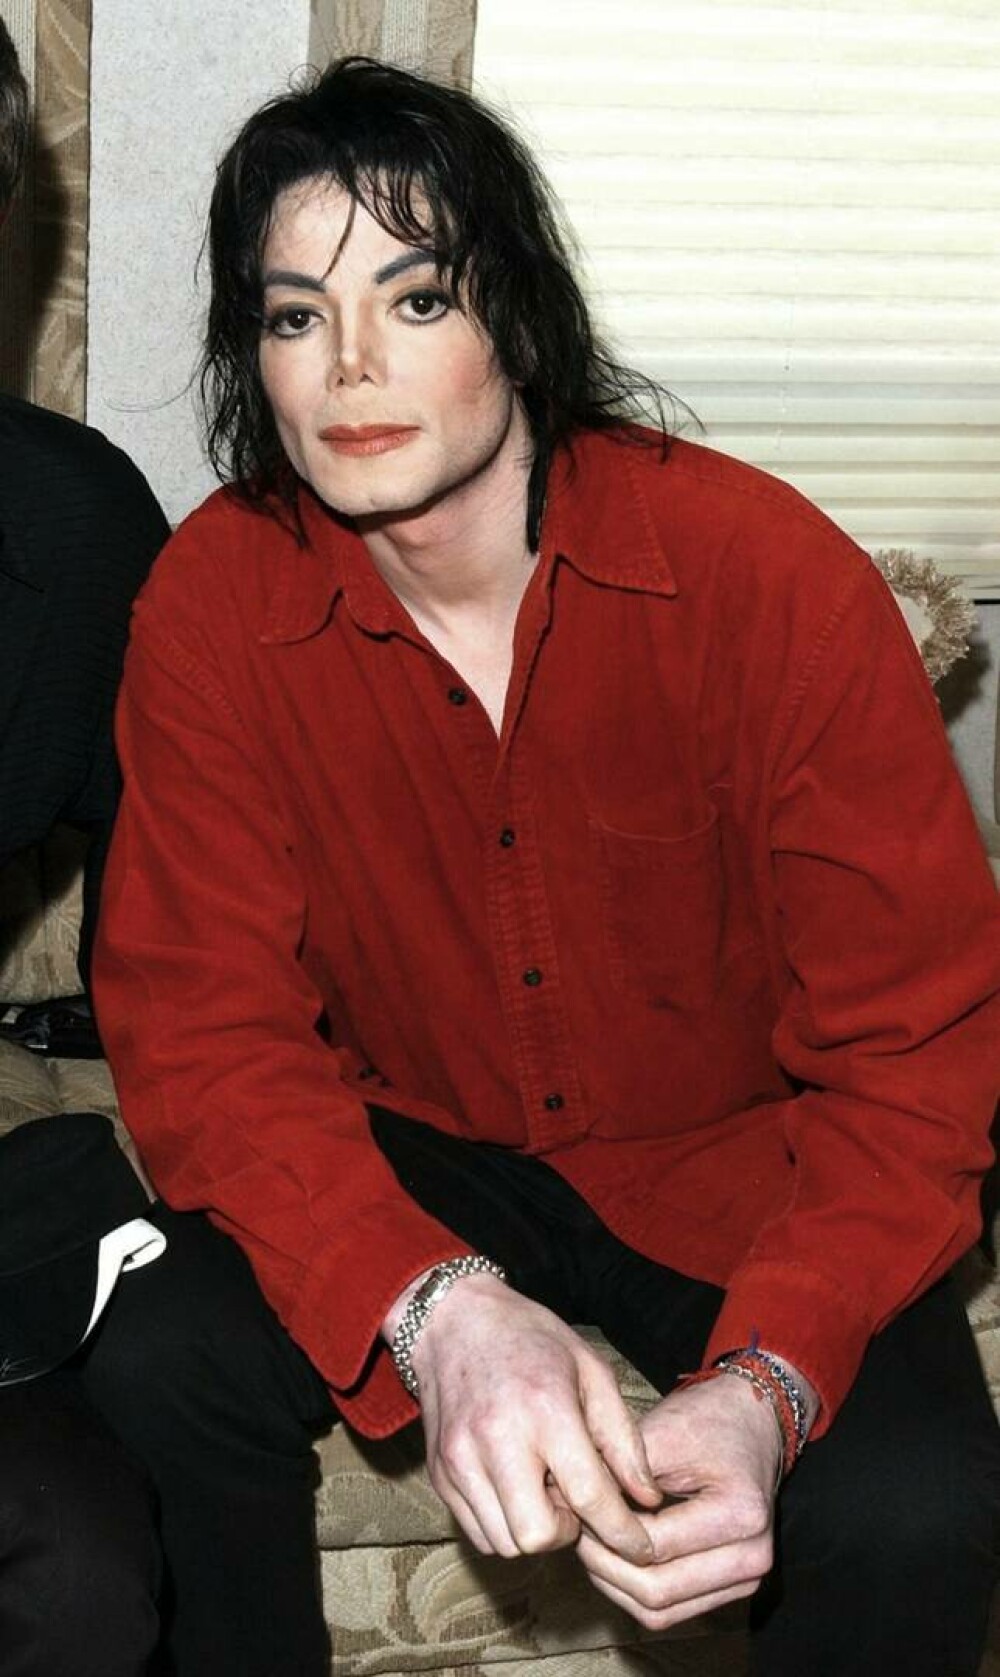 Imagini de colecție cu Michael Jackson. Regele muzicii pop ar fi împlinit 65 de ani | GALERIE FOTO - Imaginea 19